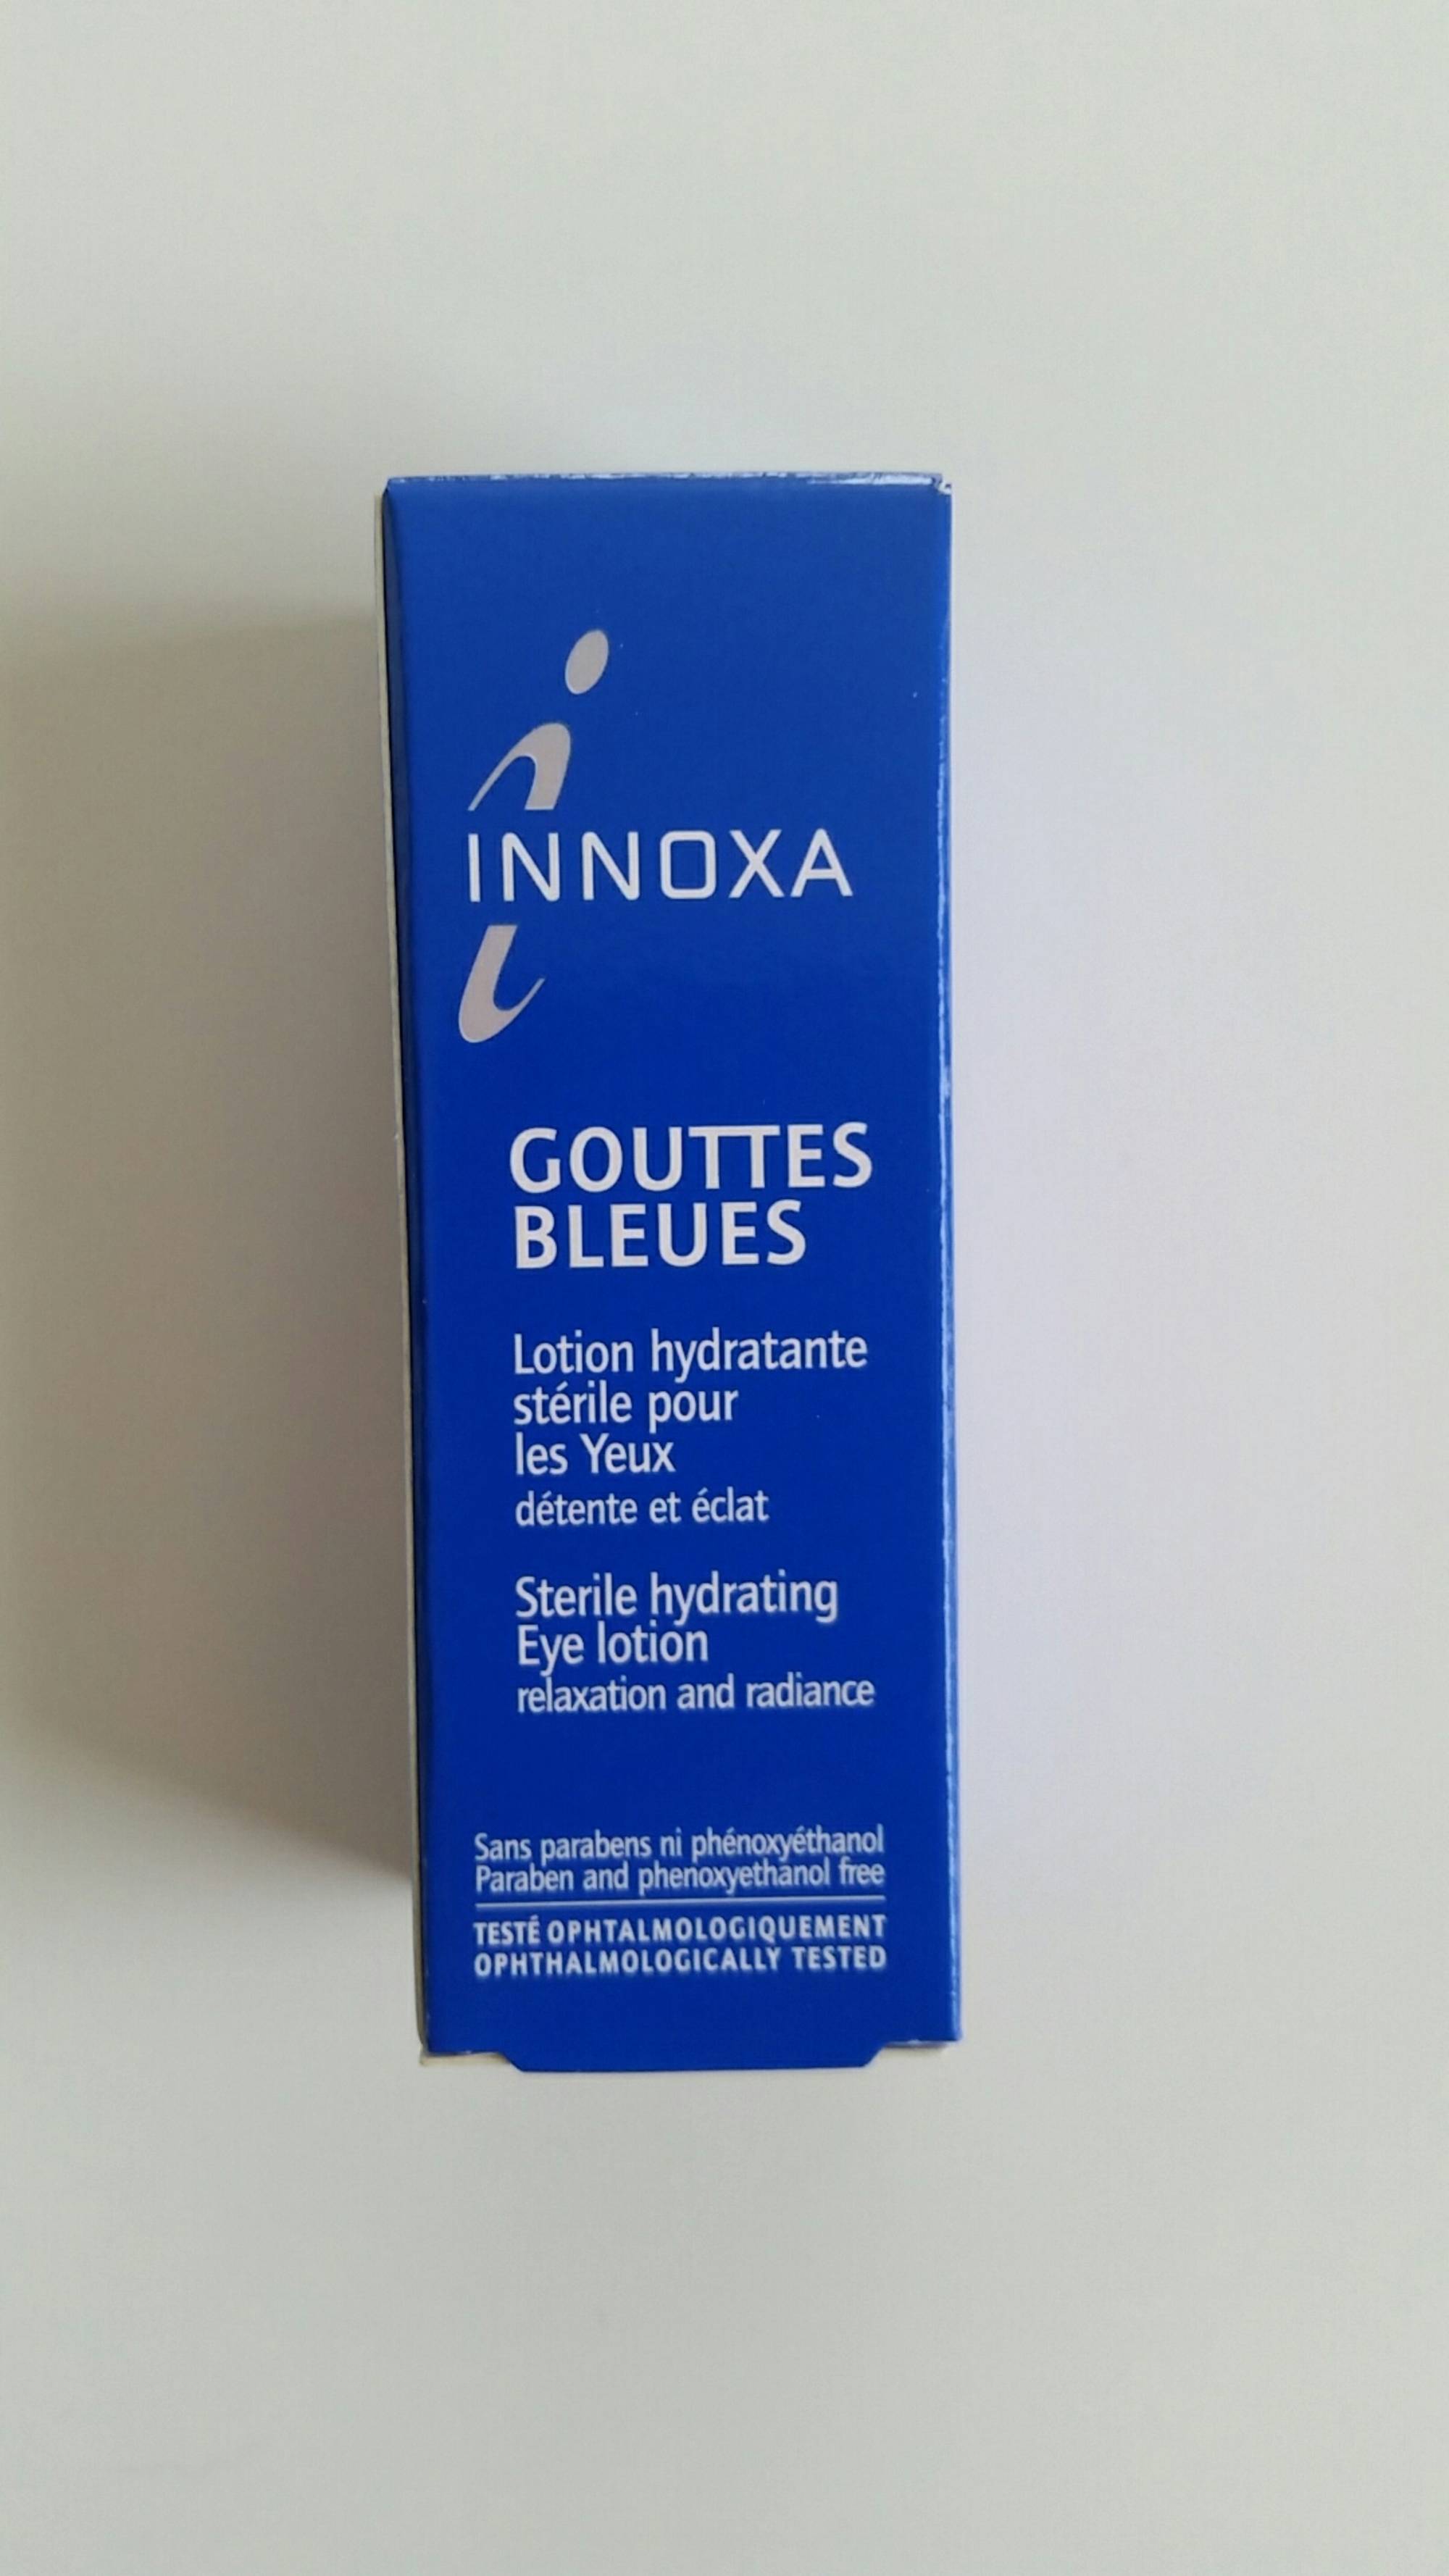 INNOXA Gouttes bleues, lotion hydratante stérile pour les yeux